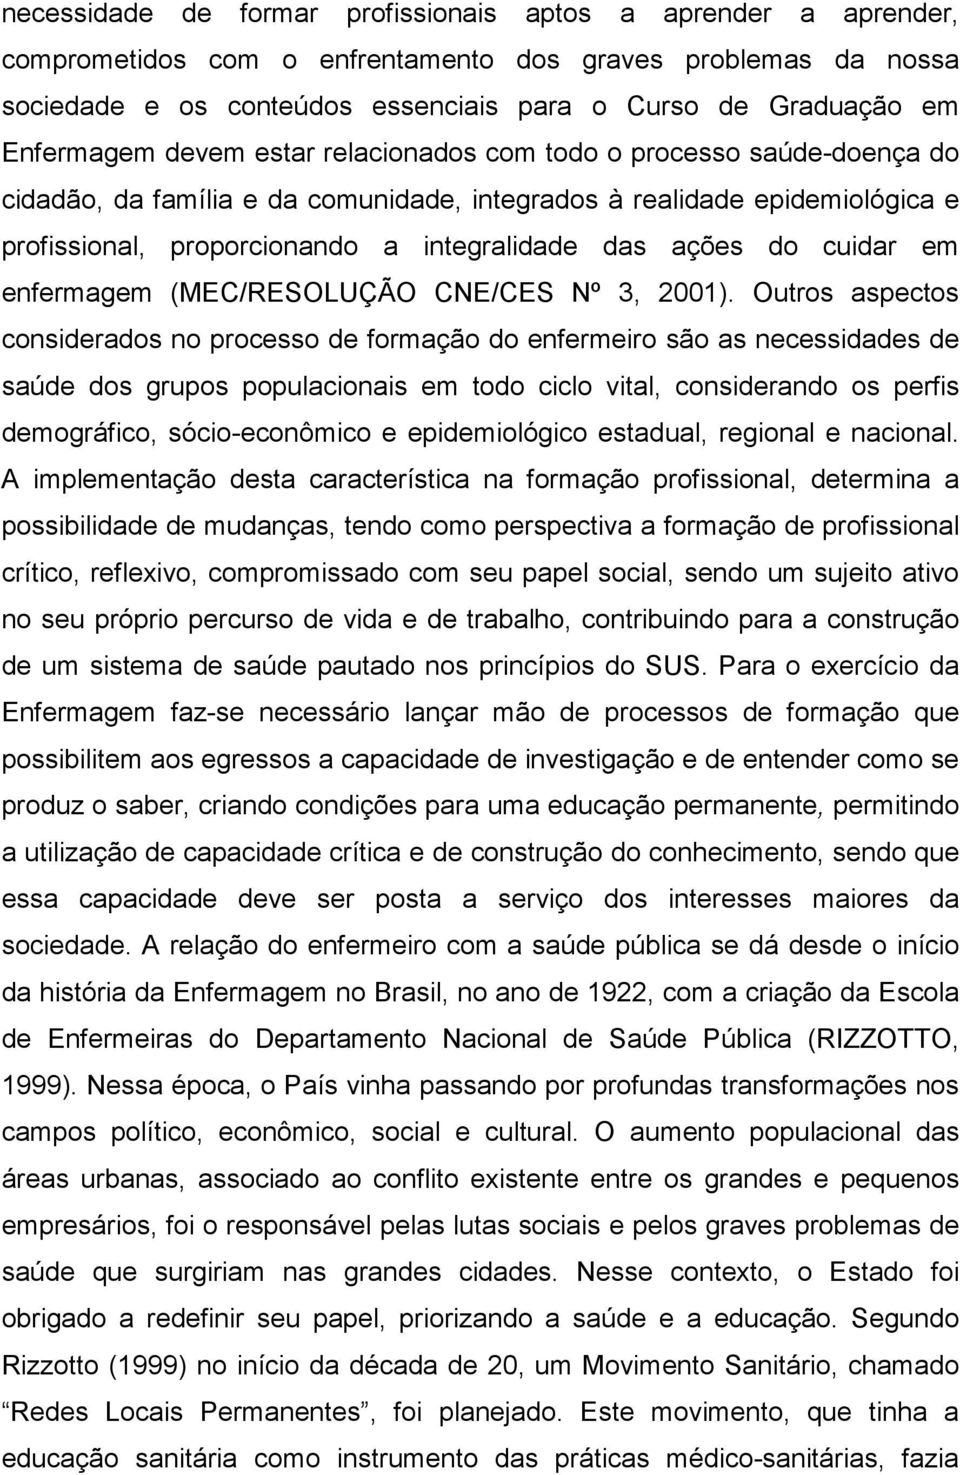 ações do cuidar em enfermagem (MEC/RESOLUÇÃO CNE/CES Nº 3, 2001).